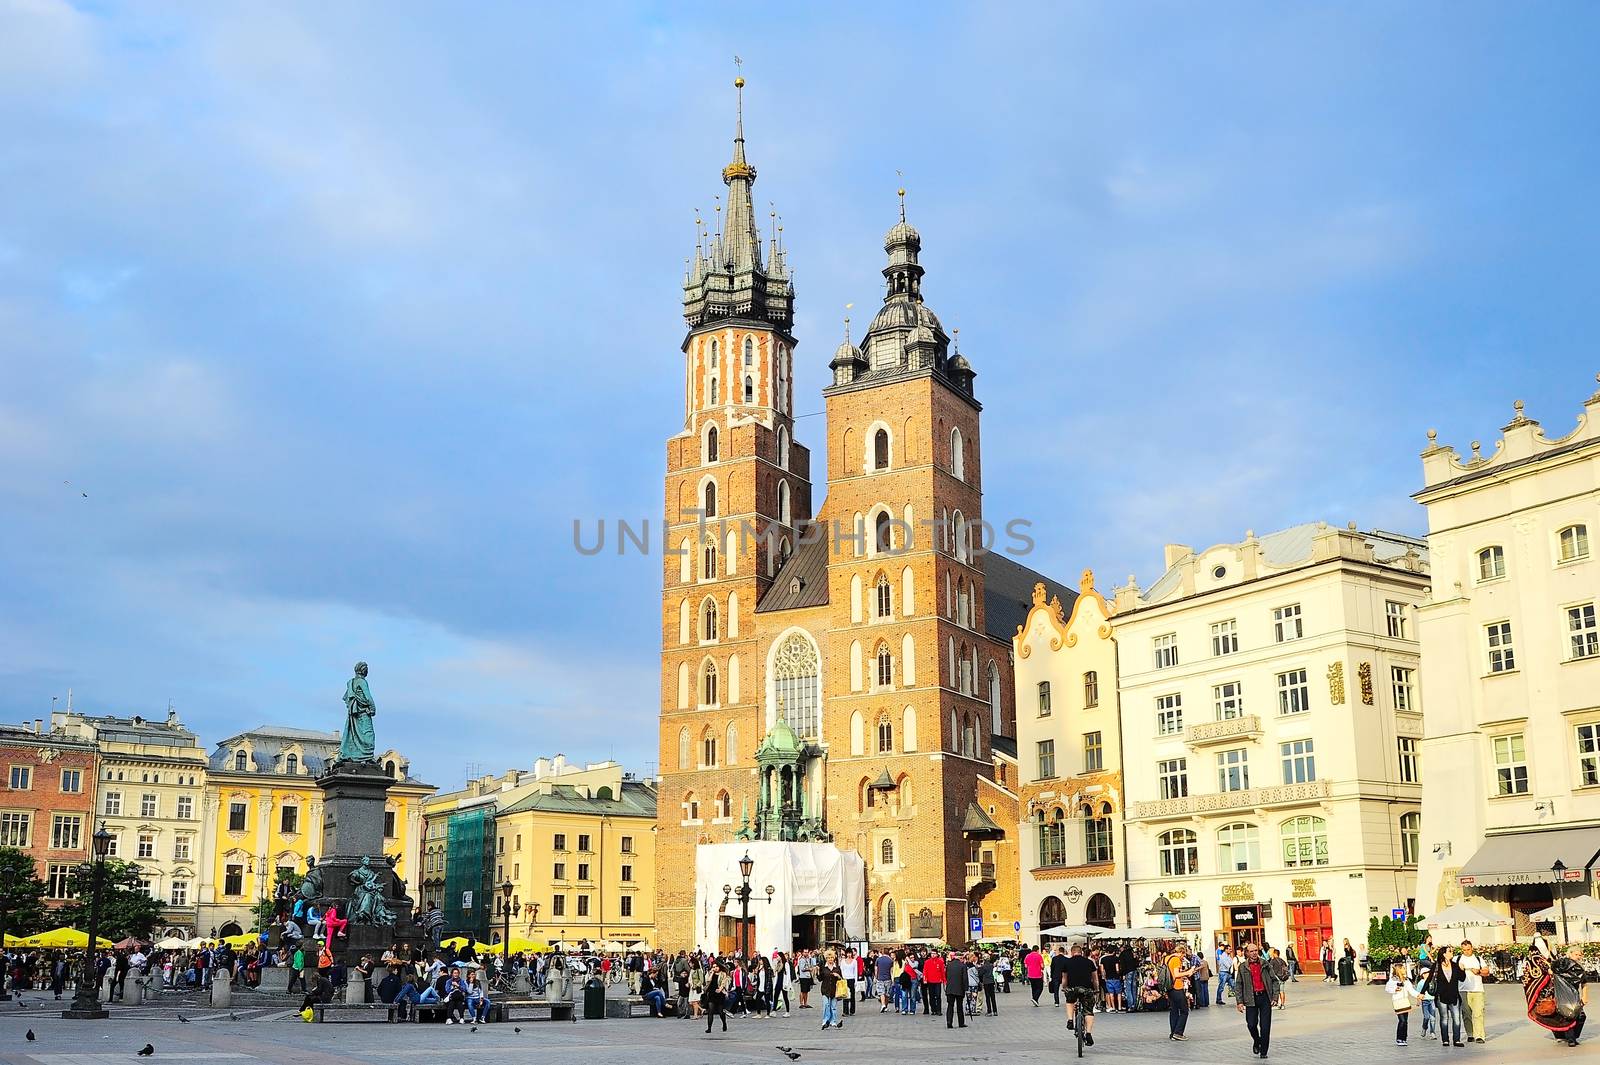 Market Square in Krakow by joyfull